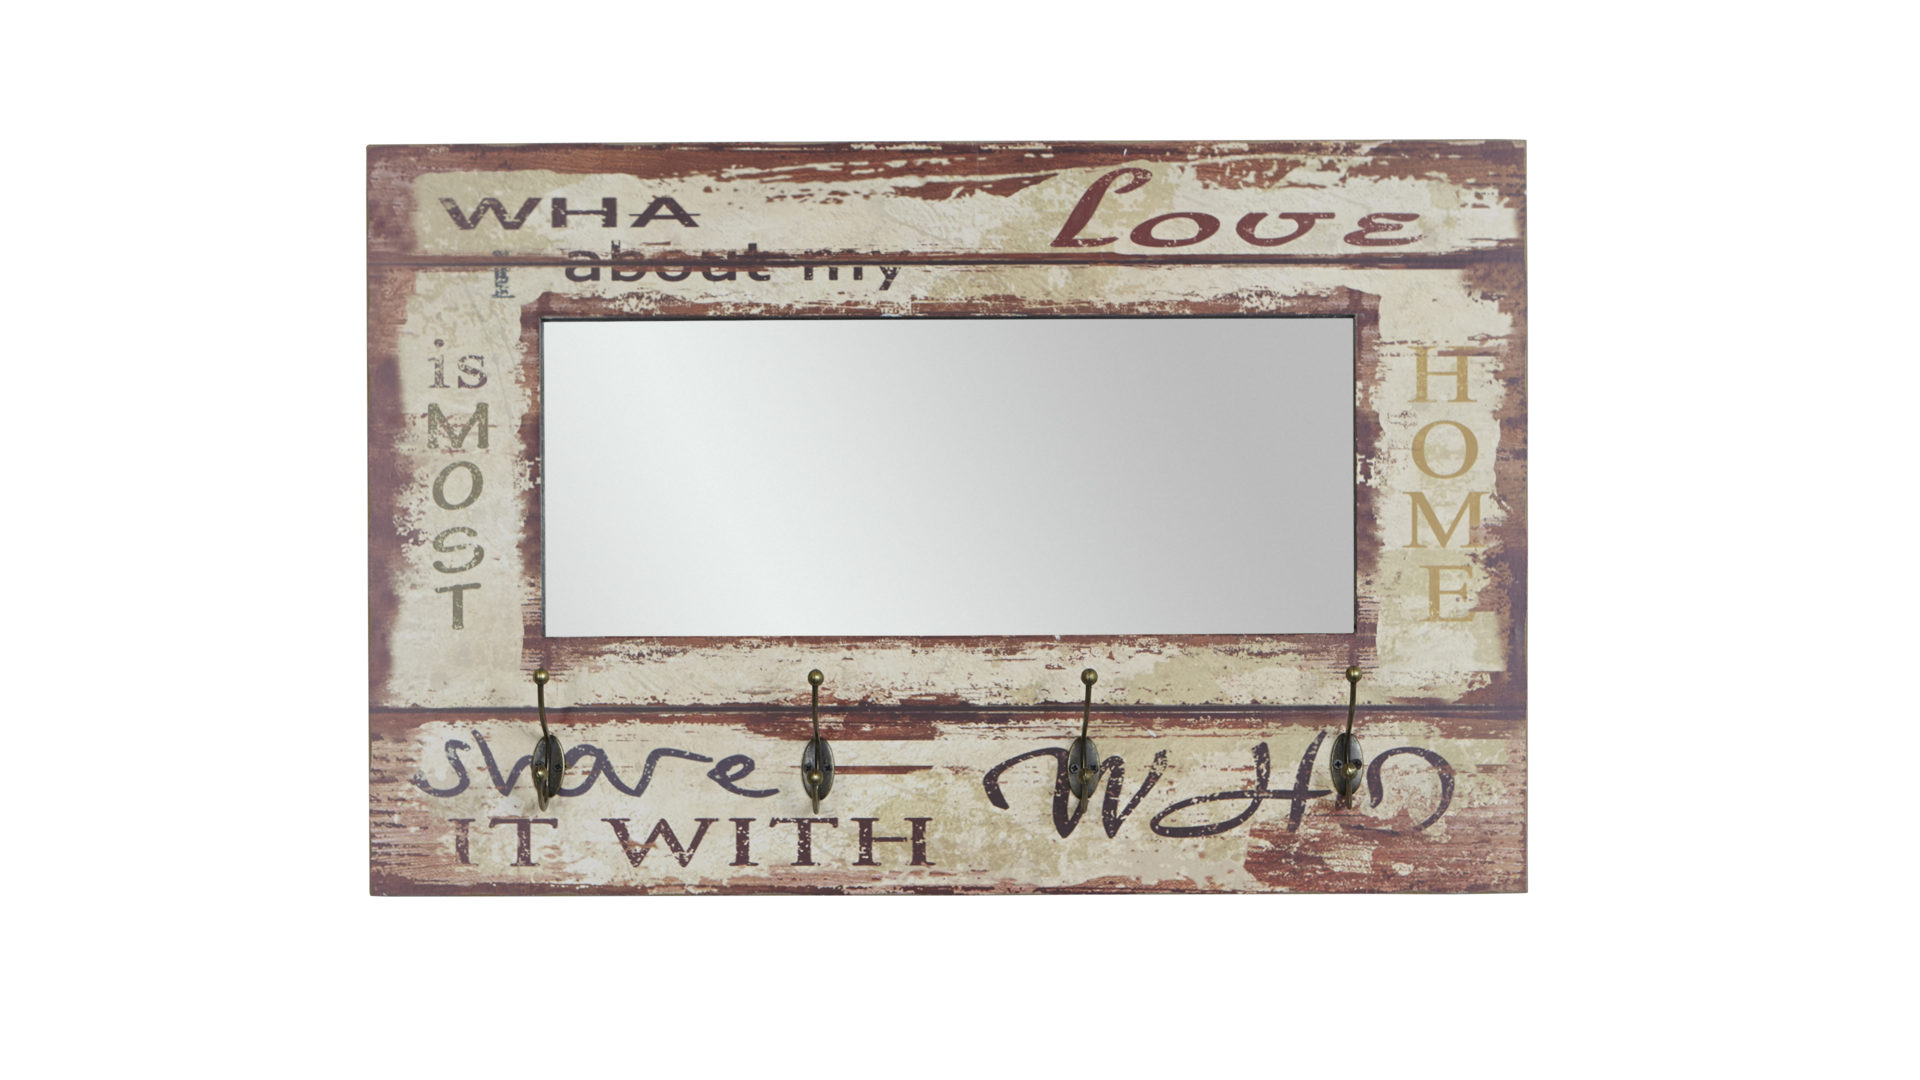 Wandgarderobe Haku aus MDF Spiegel in Weiß Wandgarderobe im Vintage-Look mit Garderobenspiegel weiß mit Vintageprint – ca. 80 x 52 cm